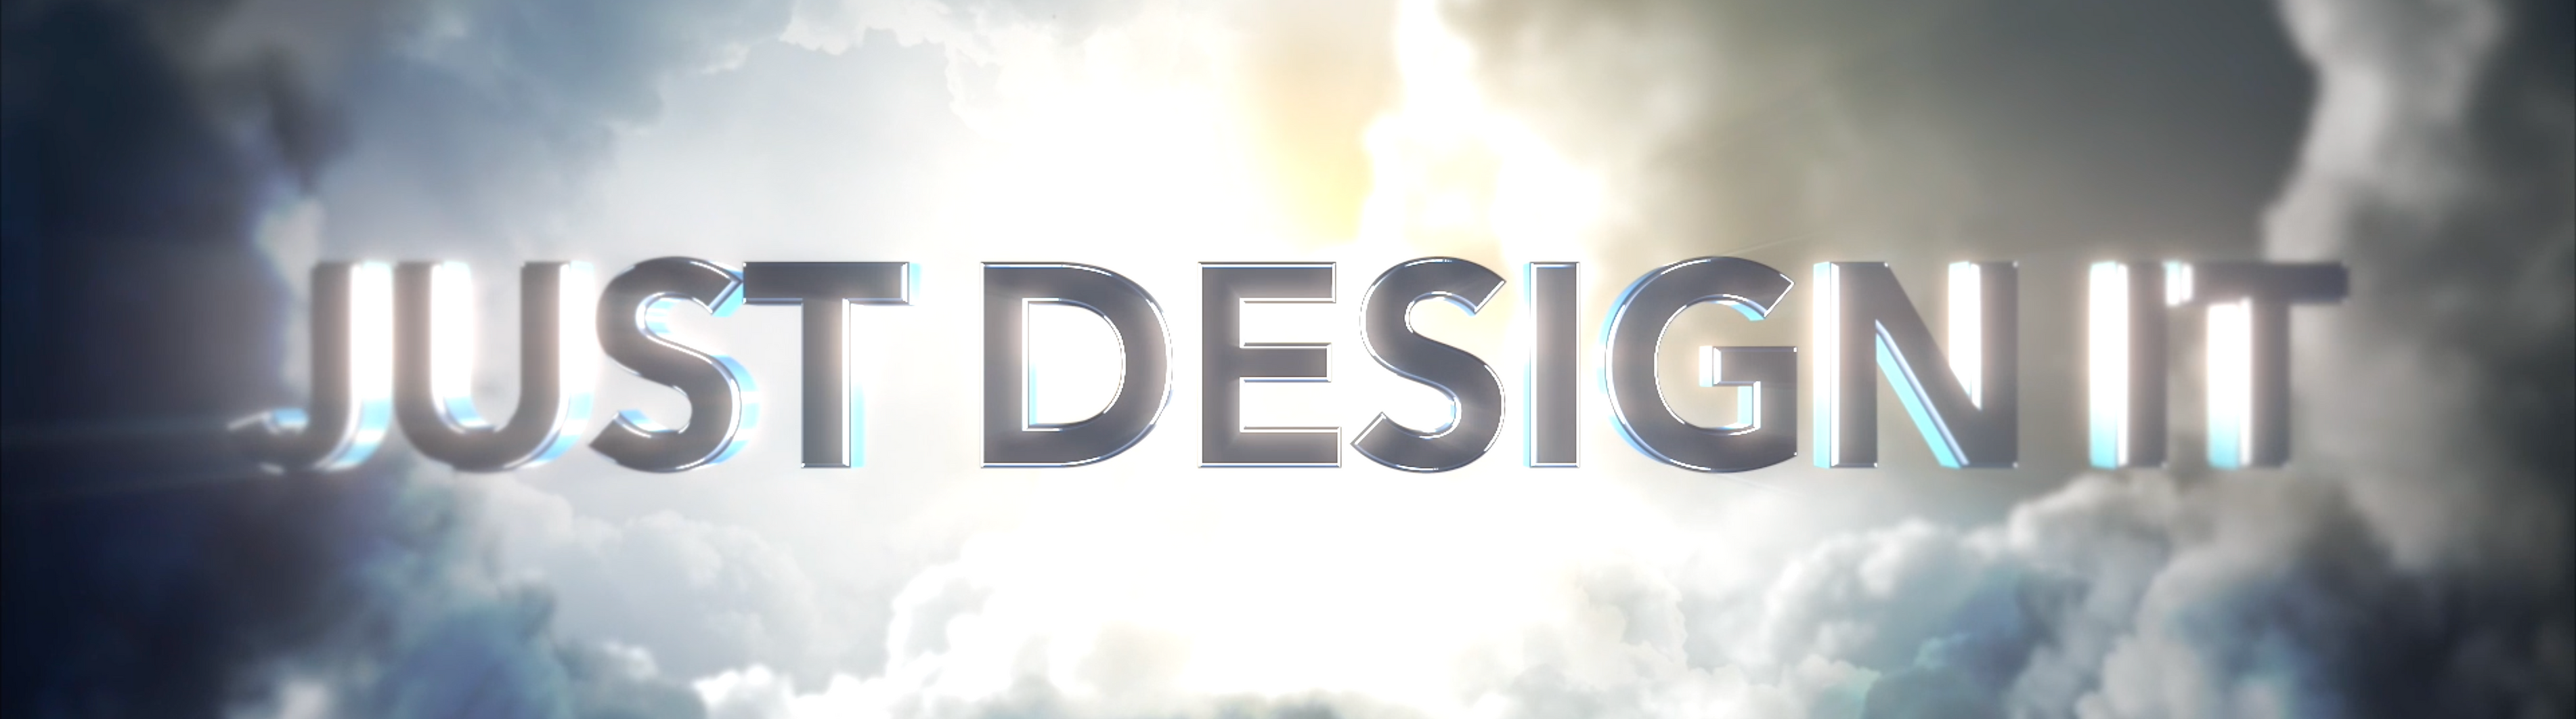 Jamie Daws - Just Design It